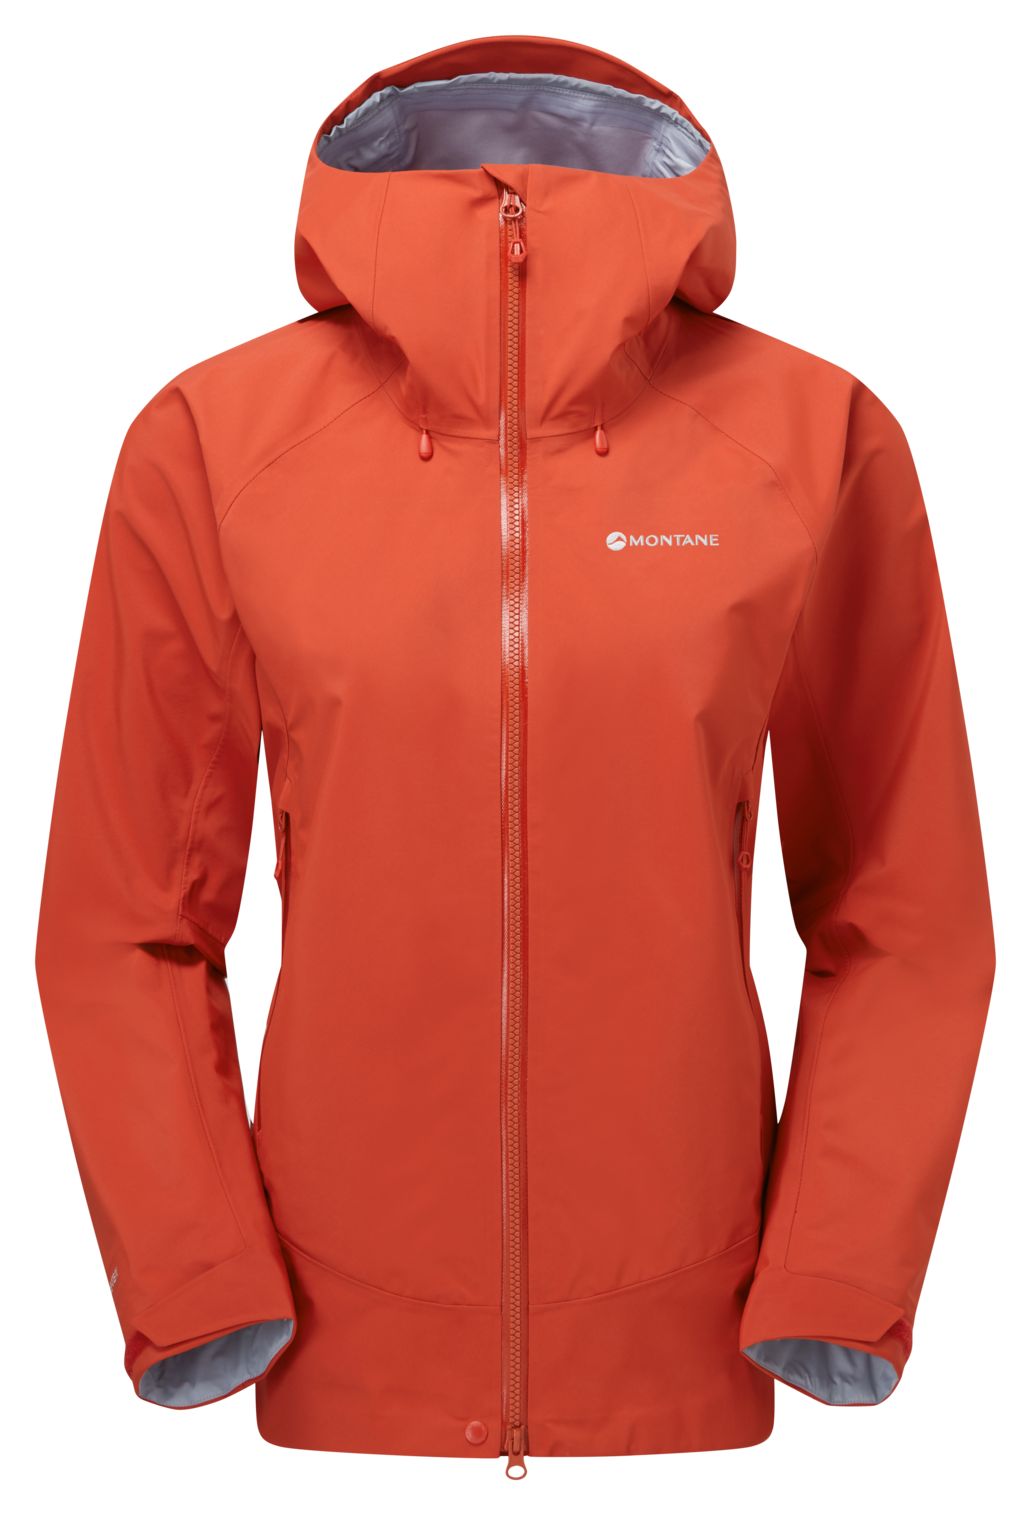 Montane dámská bunda Phase XT Jacket Barva: Saffron Red, Velikost: UK14/L